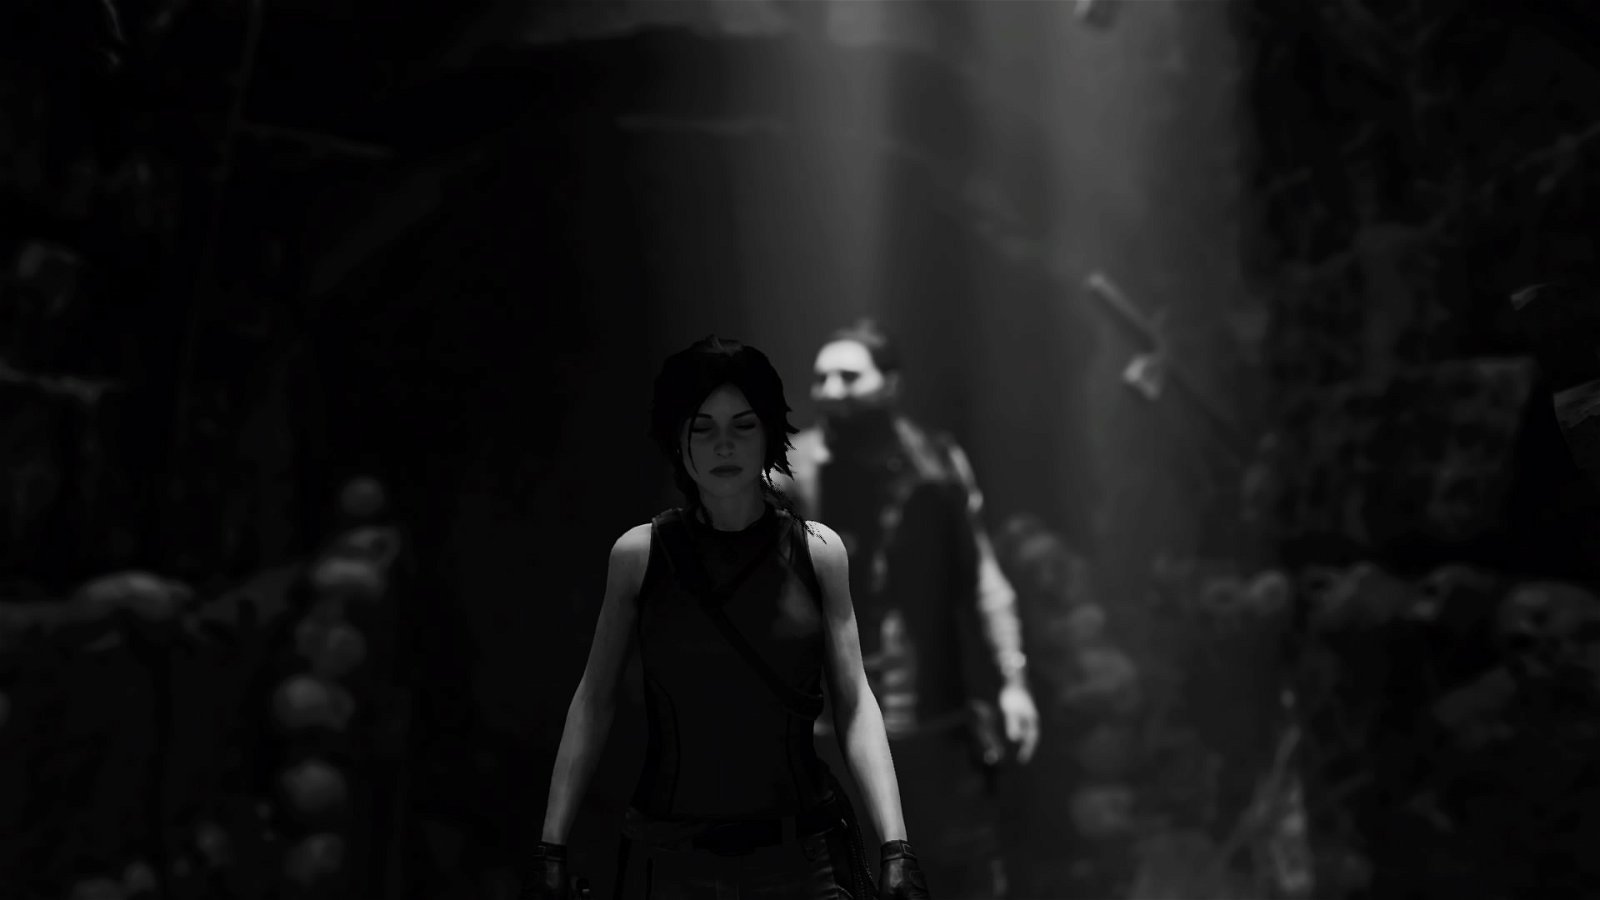 Análisis de Shadow of the Tomb Raider - El final más convincente para Lara Croft